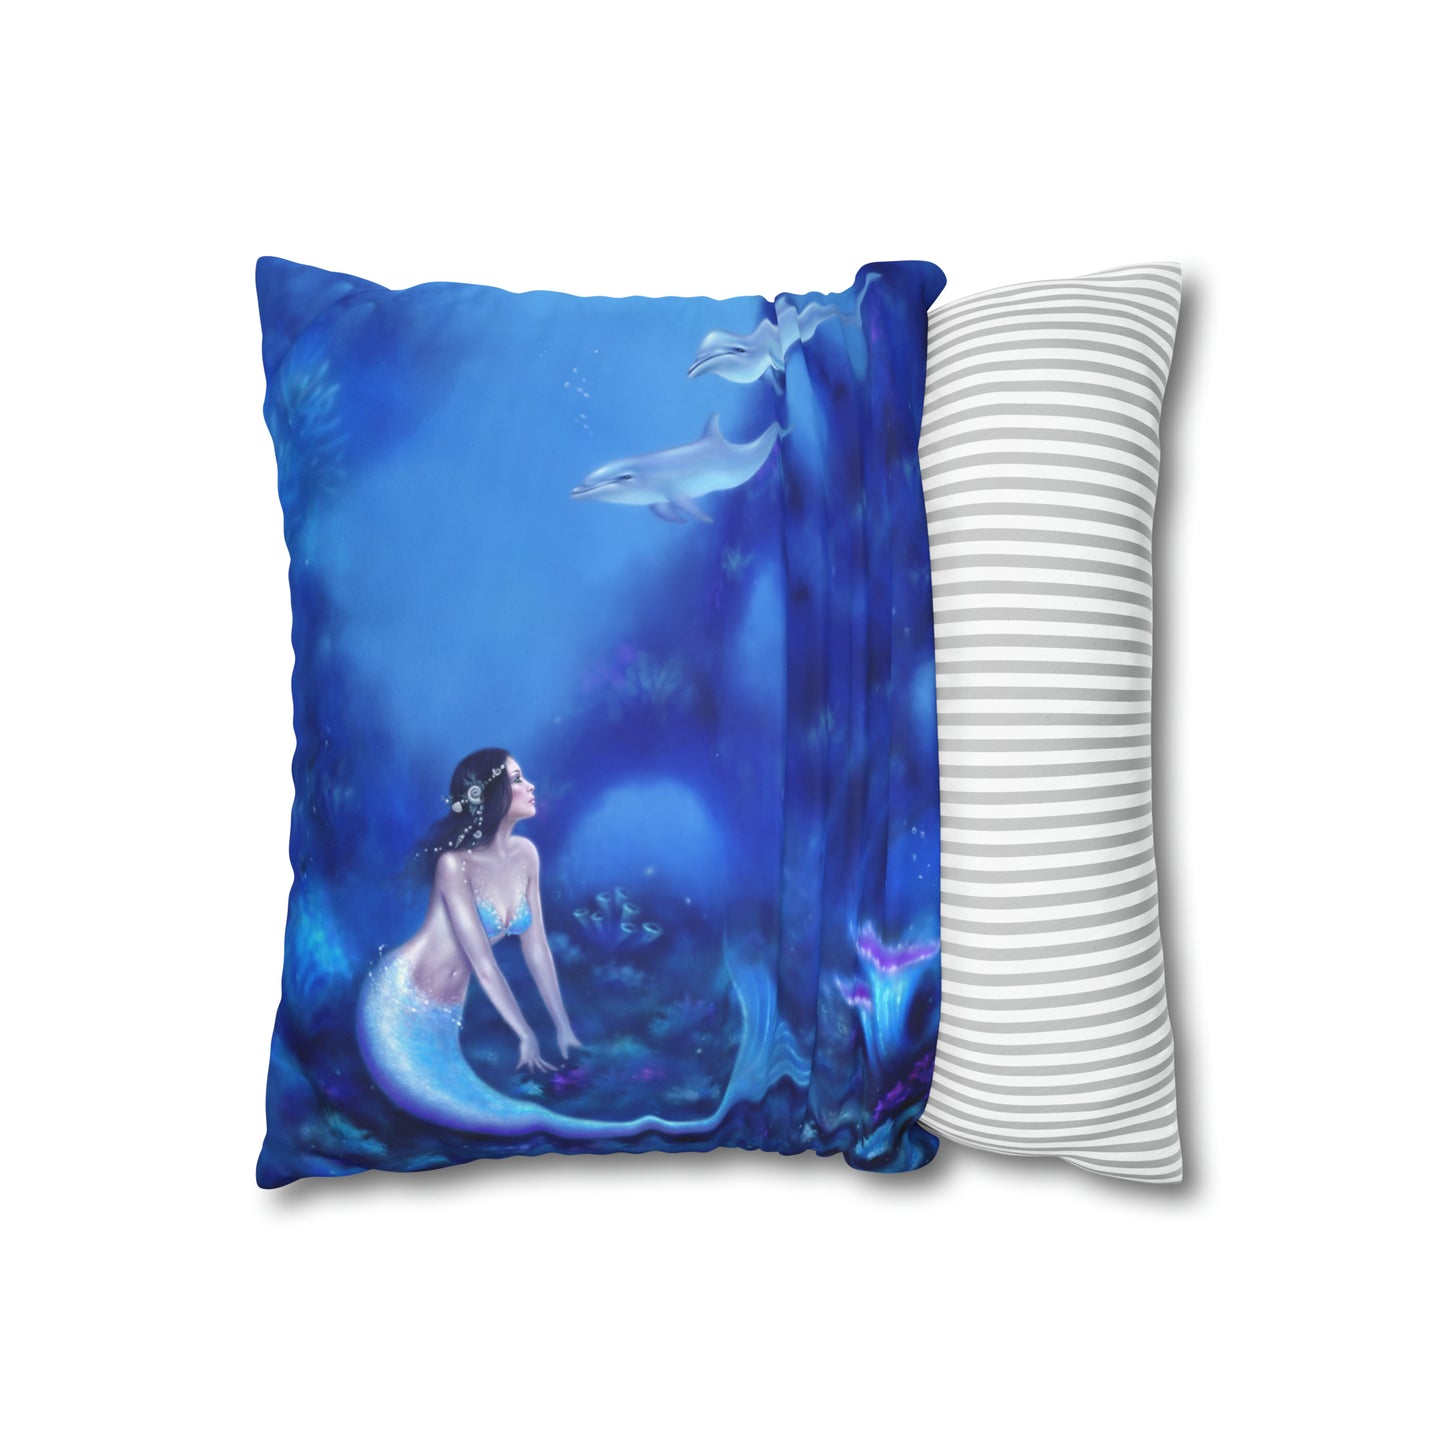 Throw Pillow Cover - Ultramarine